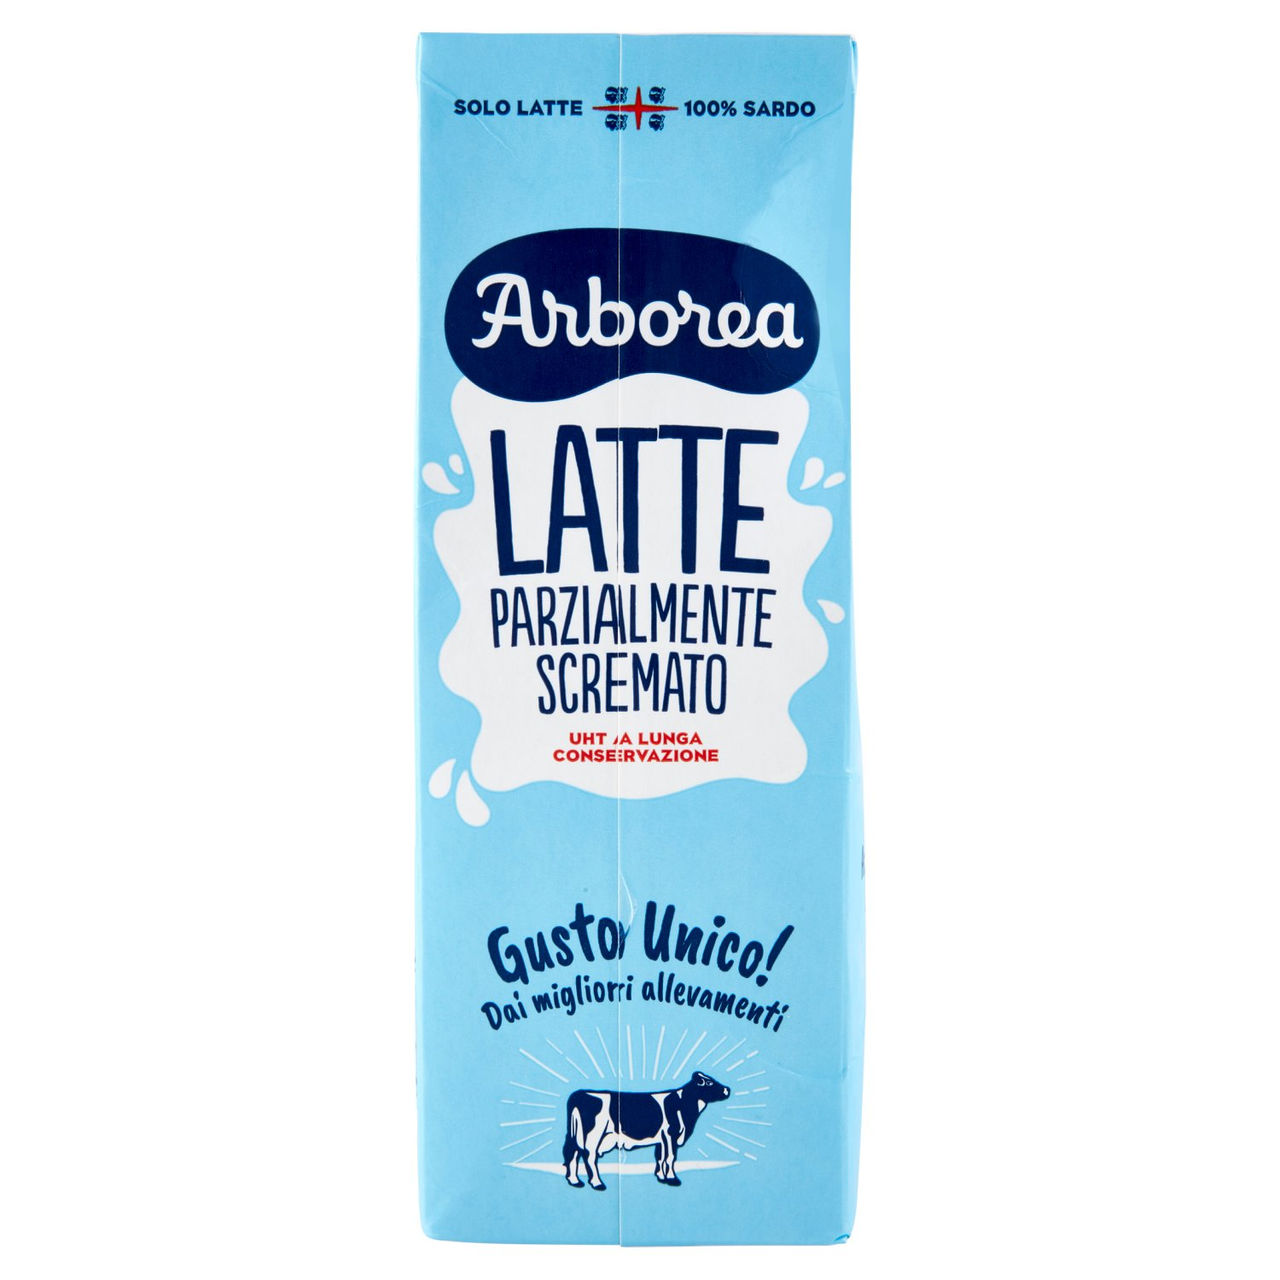 Arborea Latte Parzialmente Scremato UHT a Lunga Conservazione 1000 ml